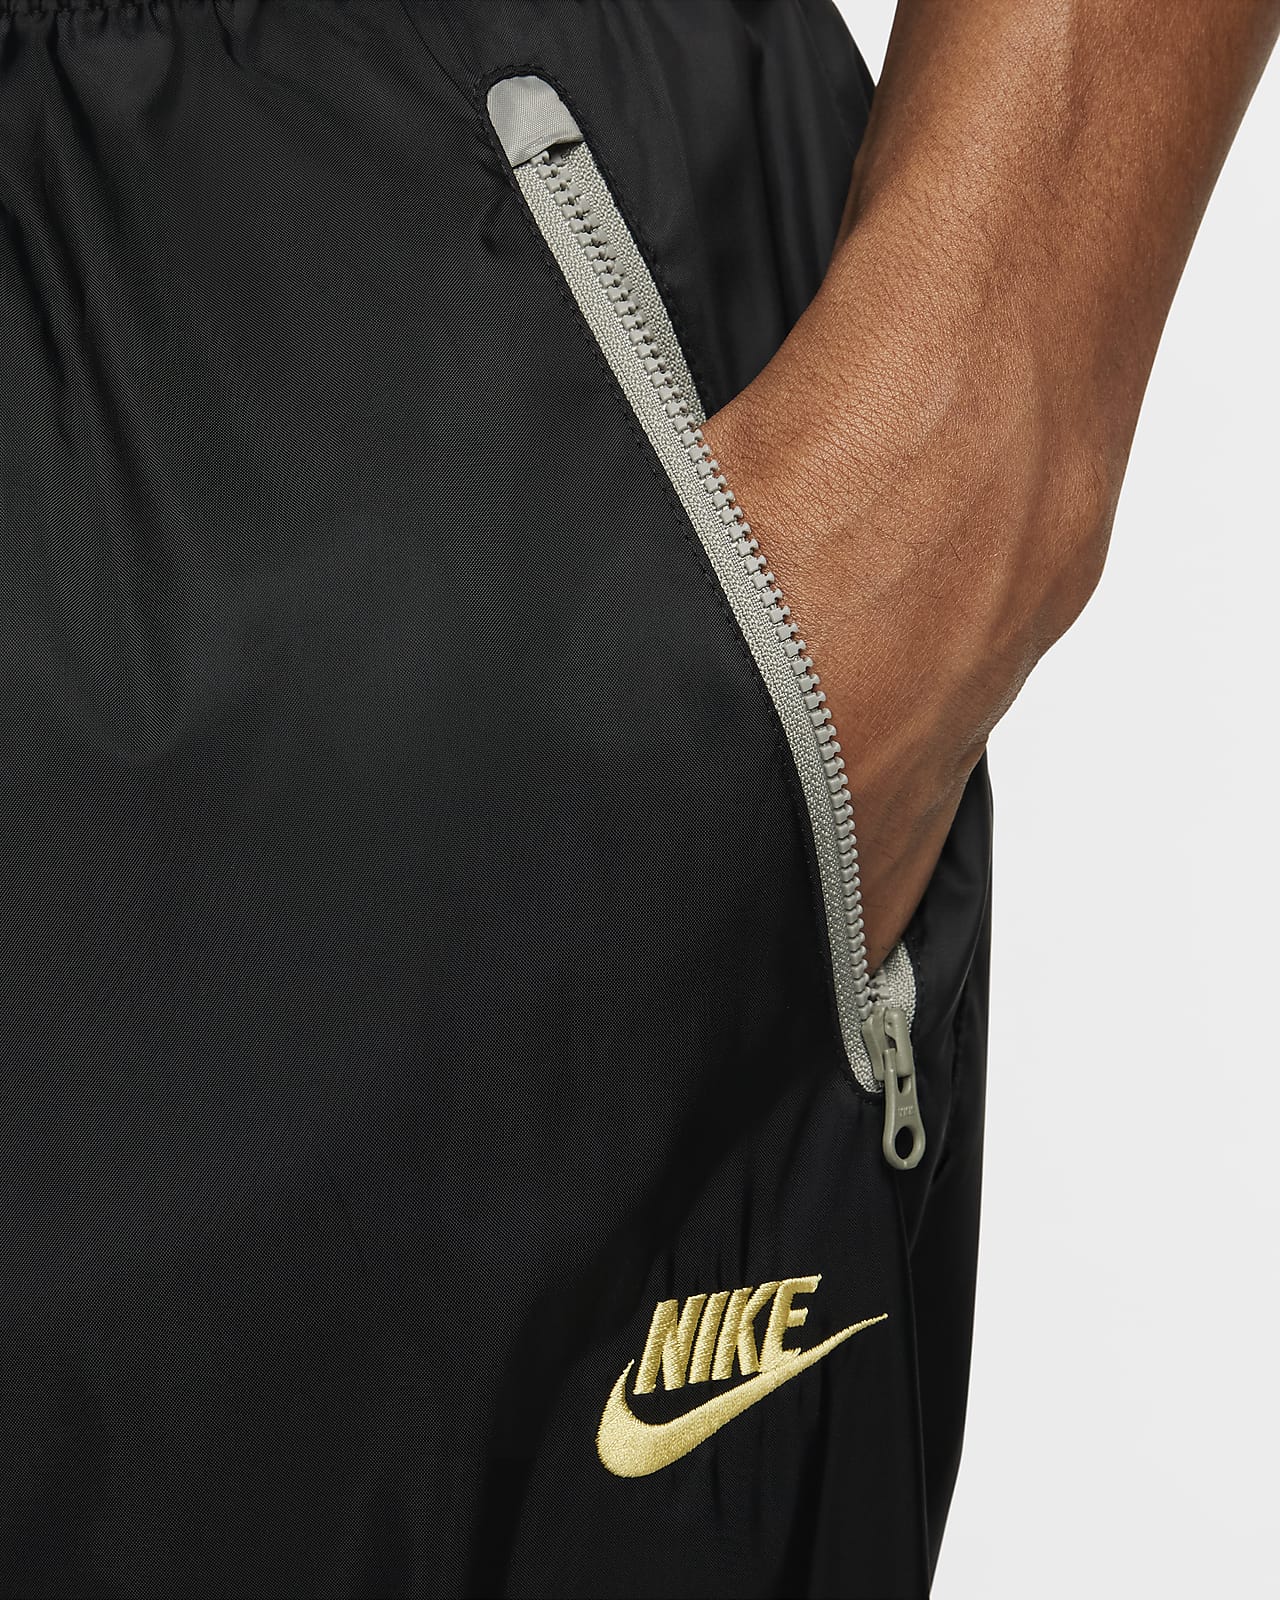 Nike Sportswear Woven Pants - Aq1895-301 - Sneakersnstuff (SNS)